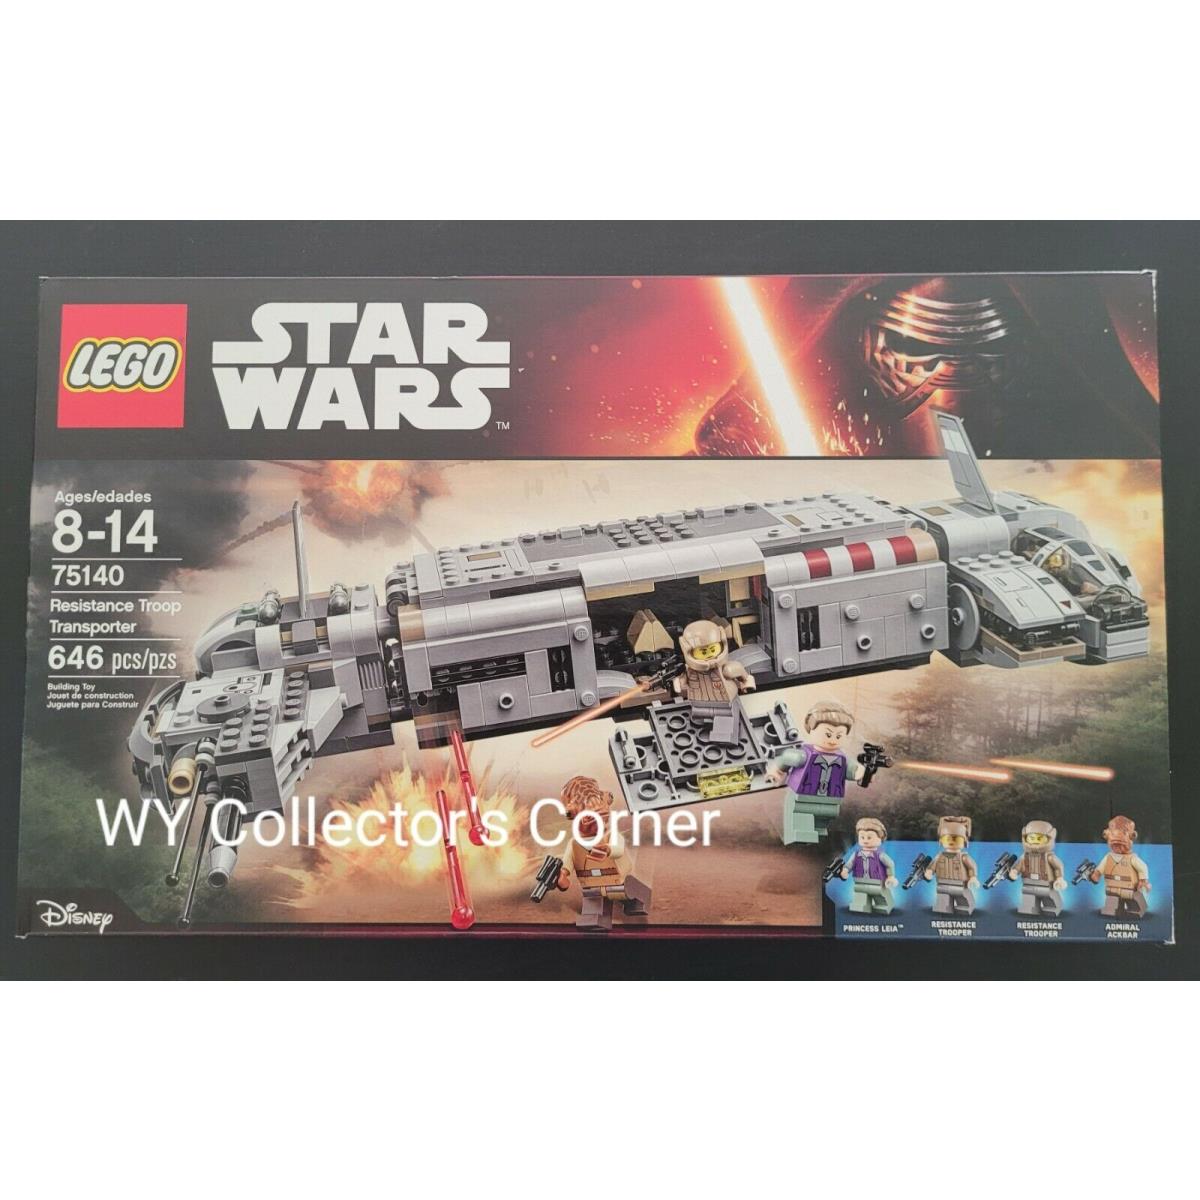 Retired Lego Star Wars Set 75140 Resistance Troop Transporter